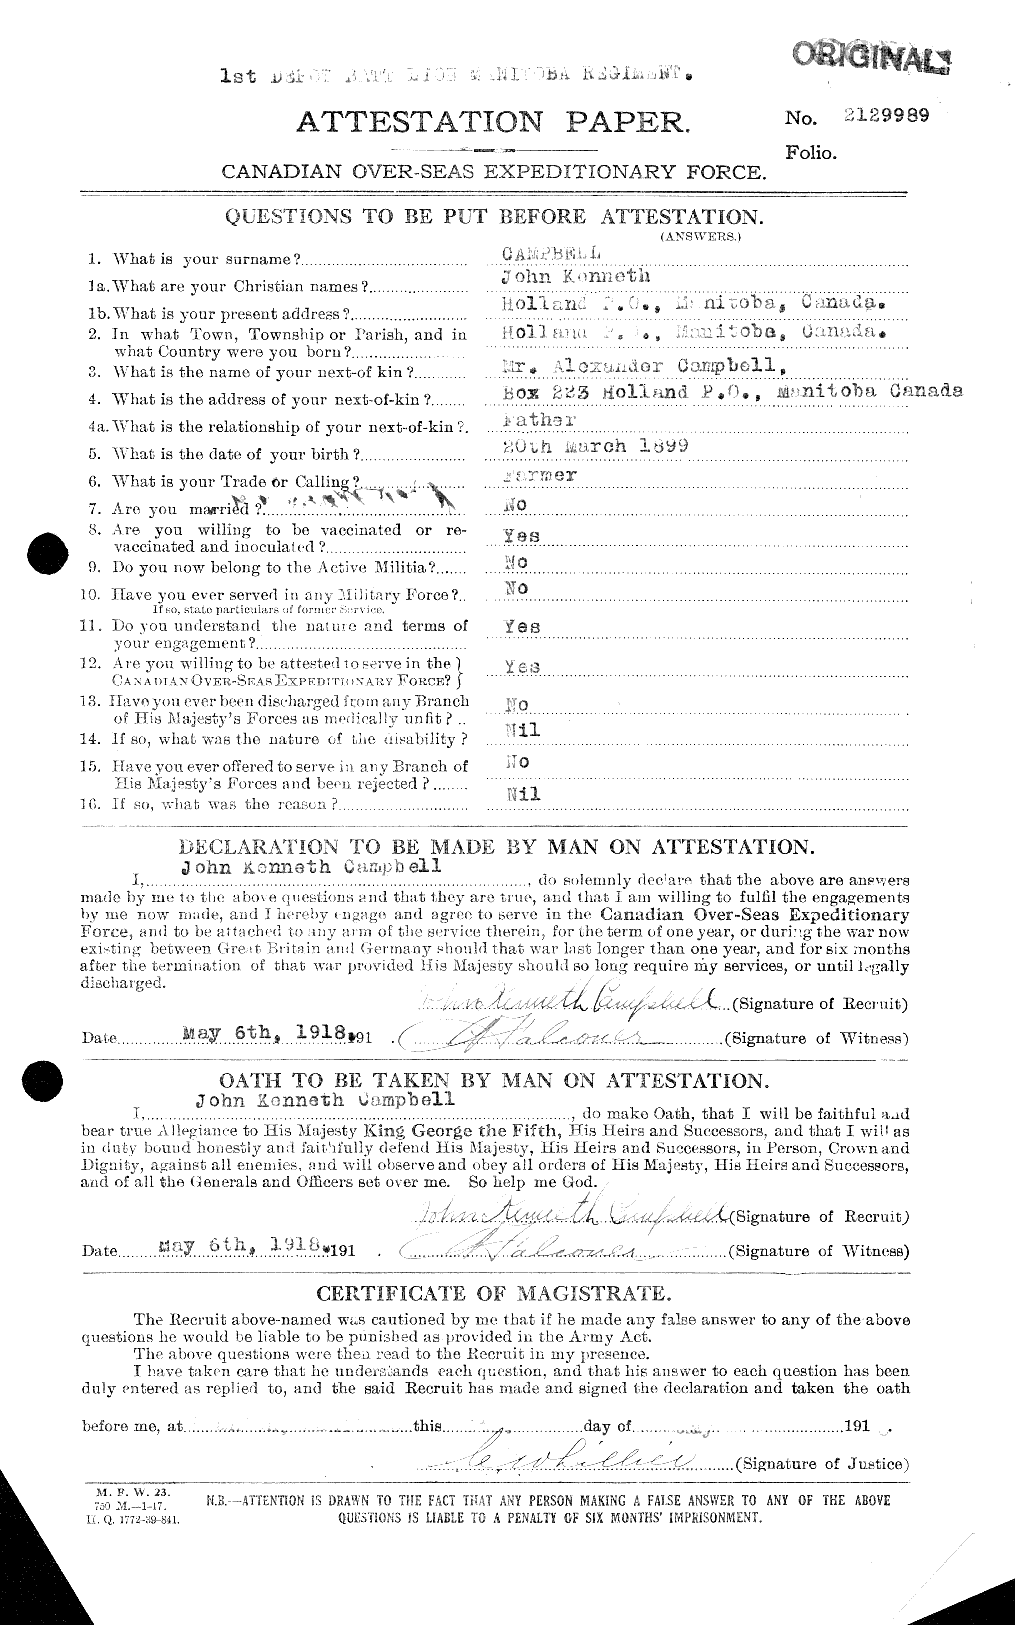 Dossiers du Personnel de la Première Guerre mondiale - CEC 003755a